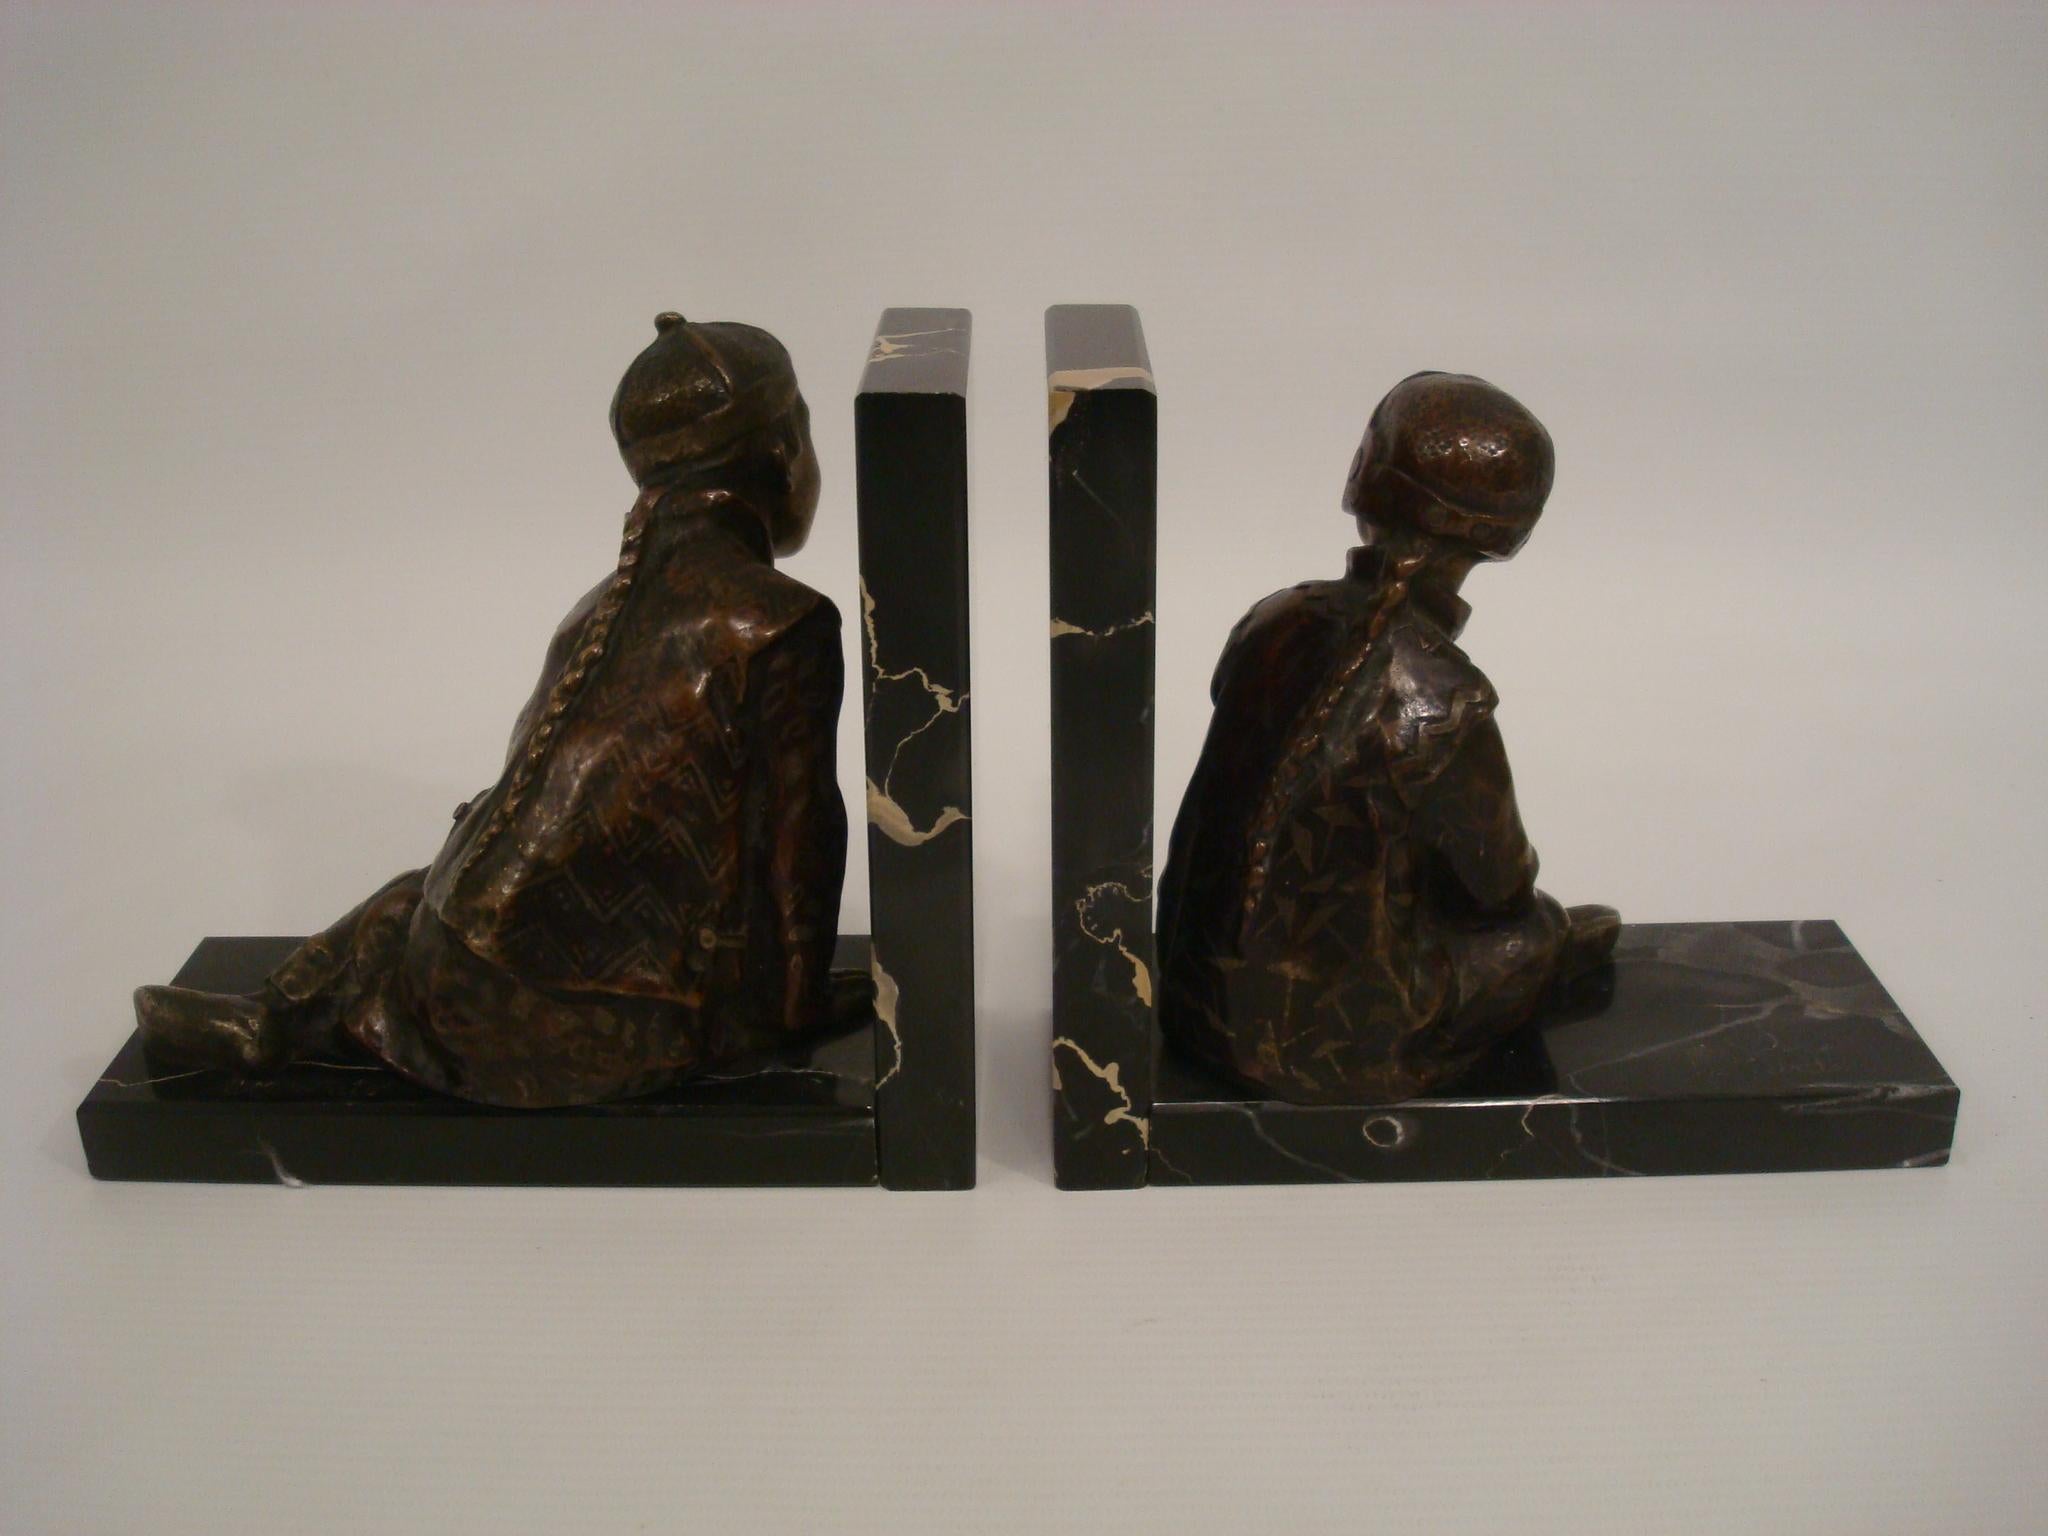 Serre-livres en bronze Art déco représentant des enfants chinois en train de jouer, par M. Whiting, Angleterre, 1920.
Paire de serre-livres en bronze représentant des enfants chinois en train de jouer, l'un jouant avec un ballon, l'autre se cachant.